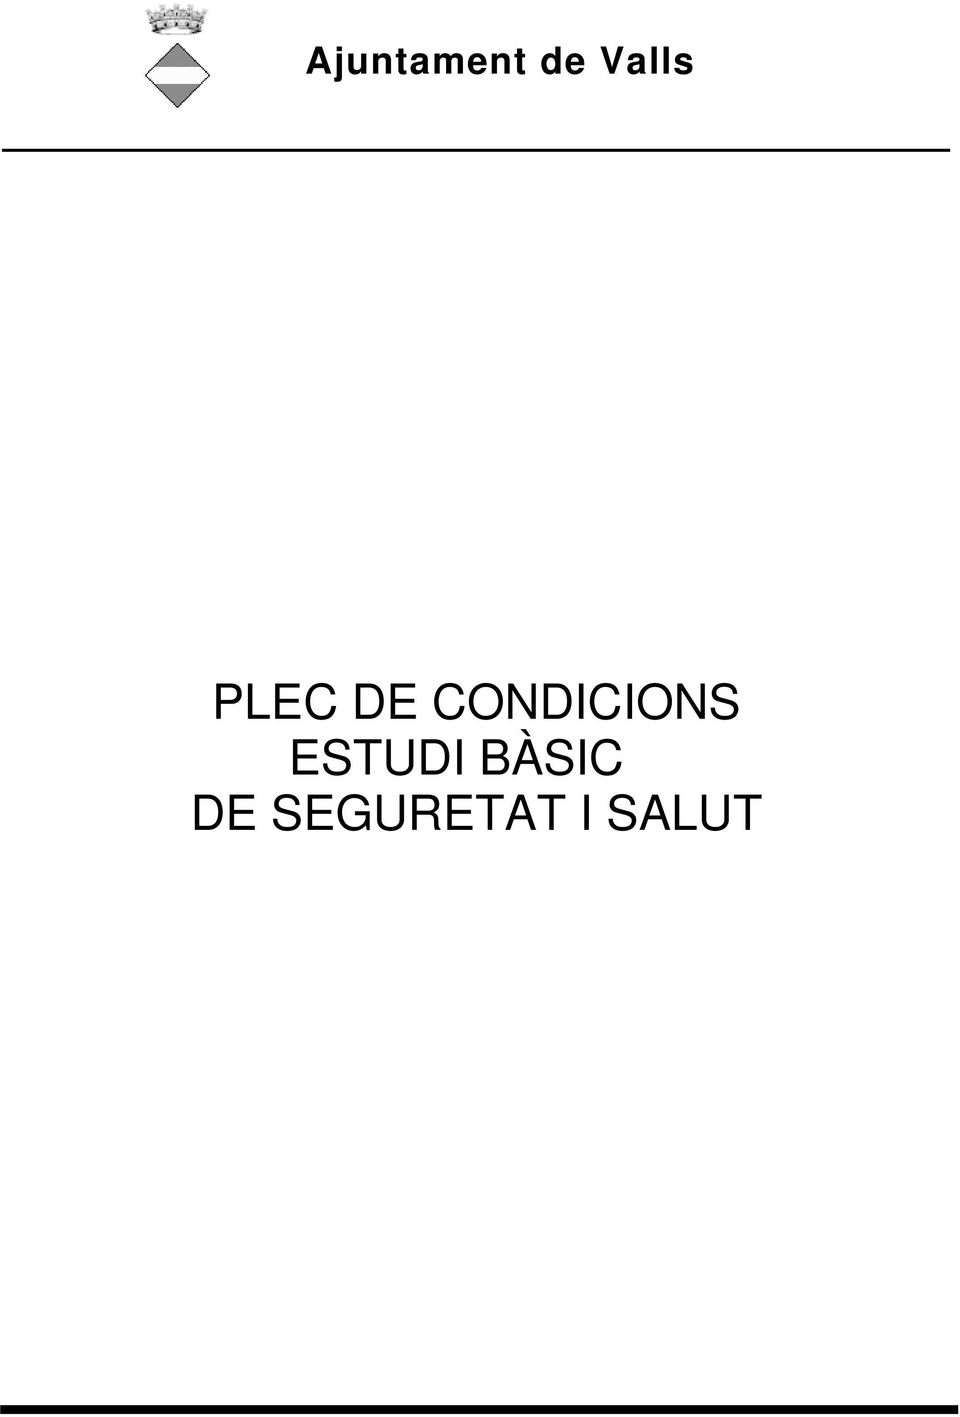 ARI 4 - PLEC DE CONDICIONS